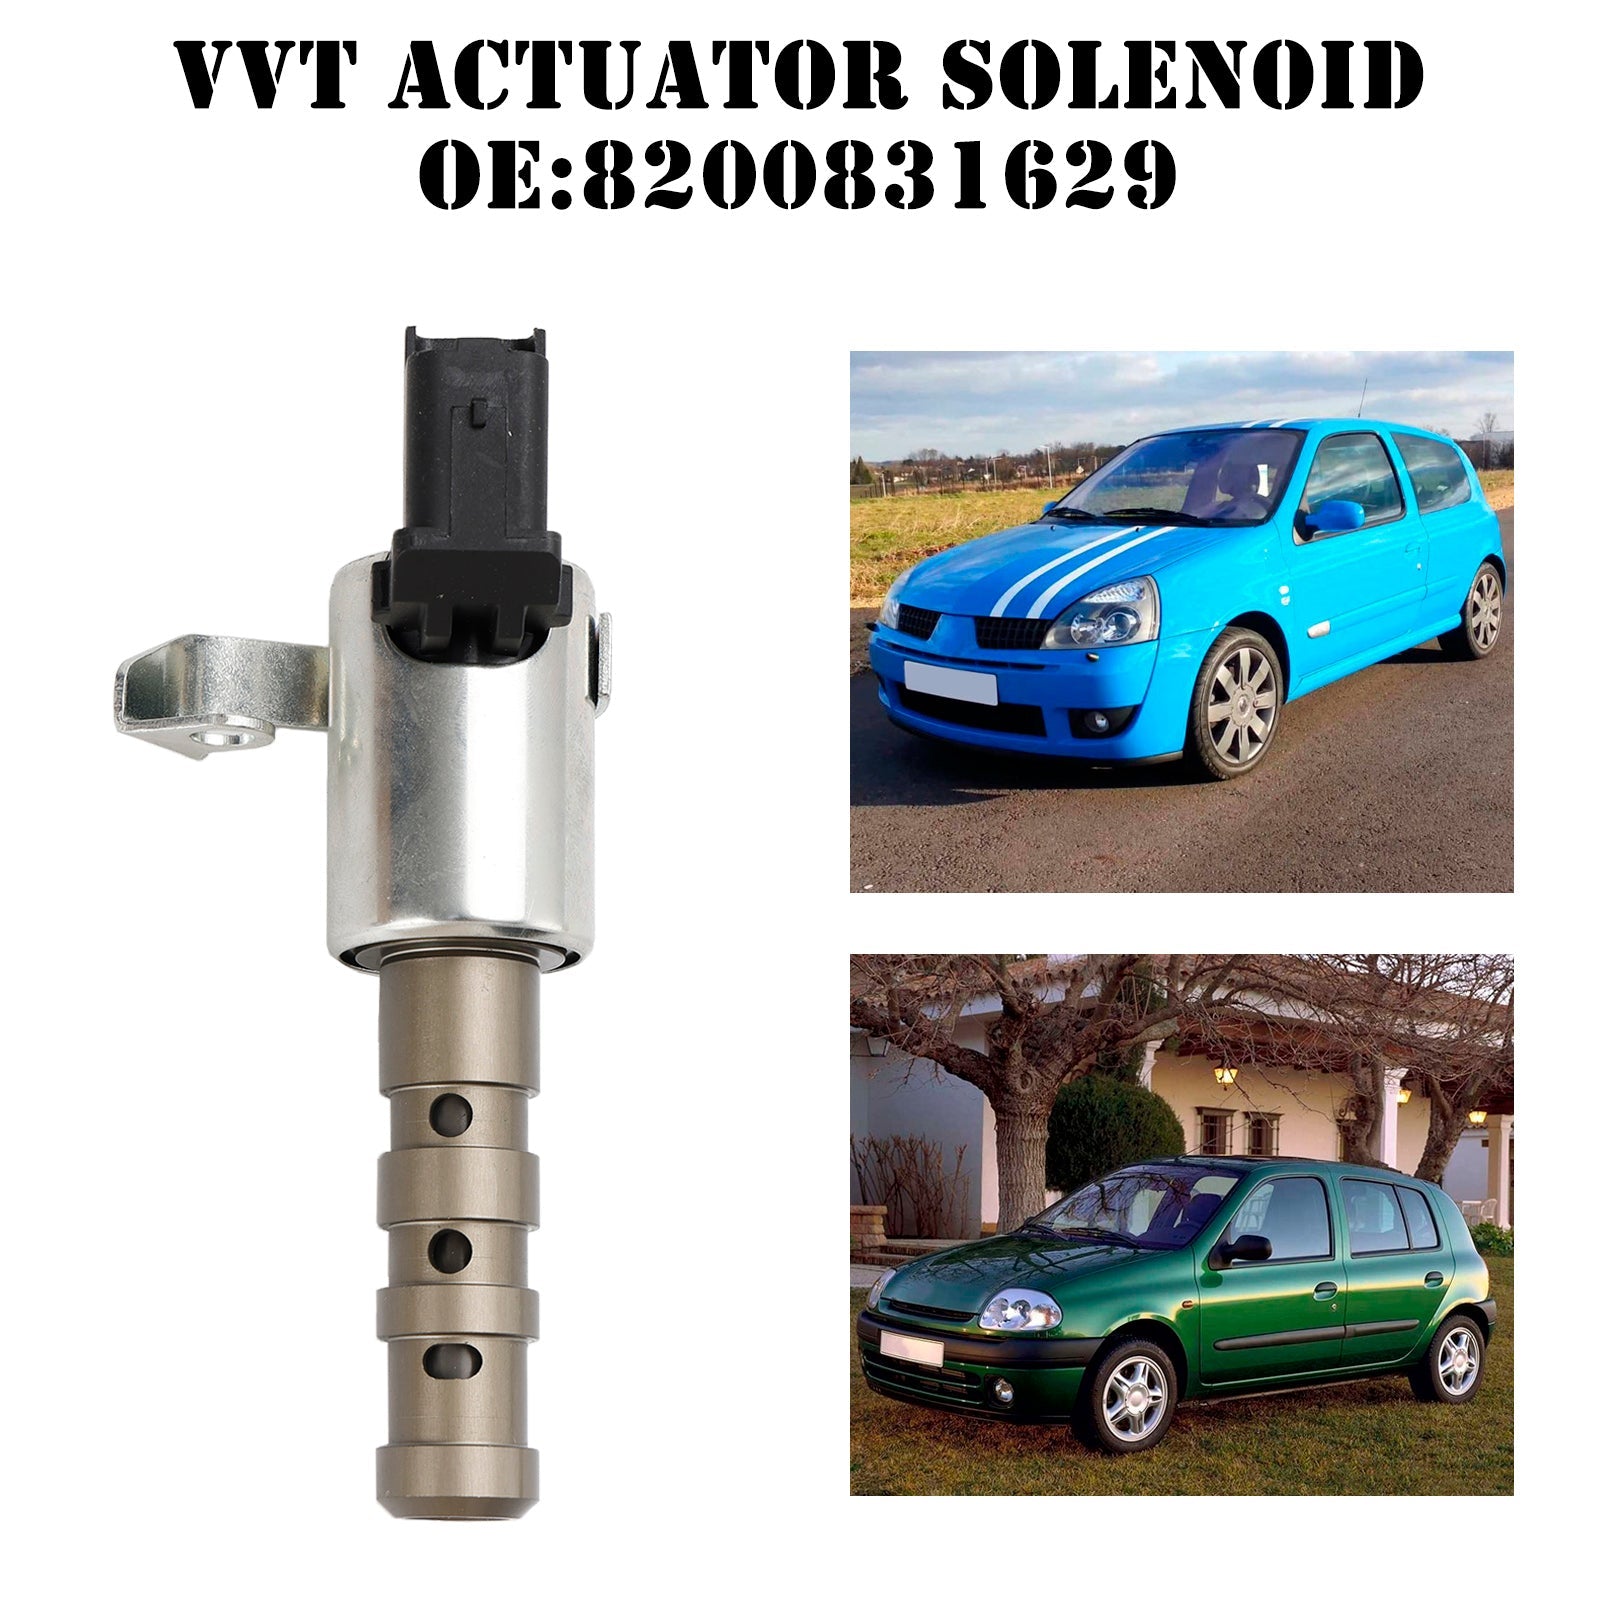 Solenoide del actuador VVT de sincronización variable de la válvula del motor 8200831629 para Renault Clio